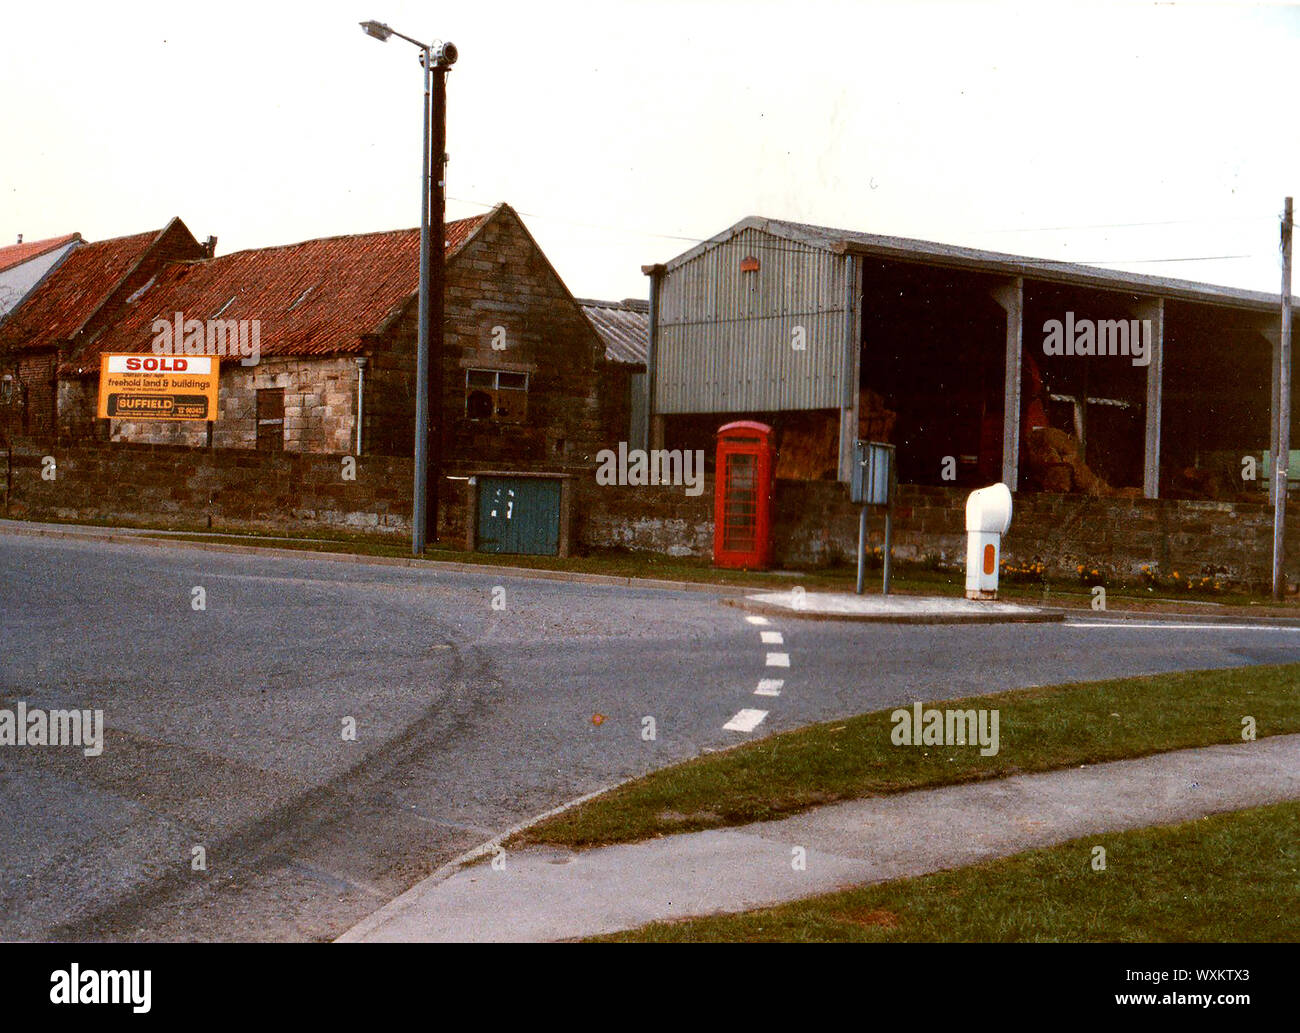 Juni 1986. Ehemaligen landwirtschaftlichen Gebäuden auf vier Fahrstreifen endet Kreisverkehr (Straße auf Serpentinen auf der rechten Seite), Whitby, Yorkshire, England, vor der Sanierung. Die Gegend am Rande der Stadt enthält jetzt Wohnimmobilien. Auf der Lamp Post können eine alte AIR RAID SIREN, gesehen werden und darunter eine traditionelle britische rote Telefonzelle. Stockfoto